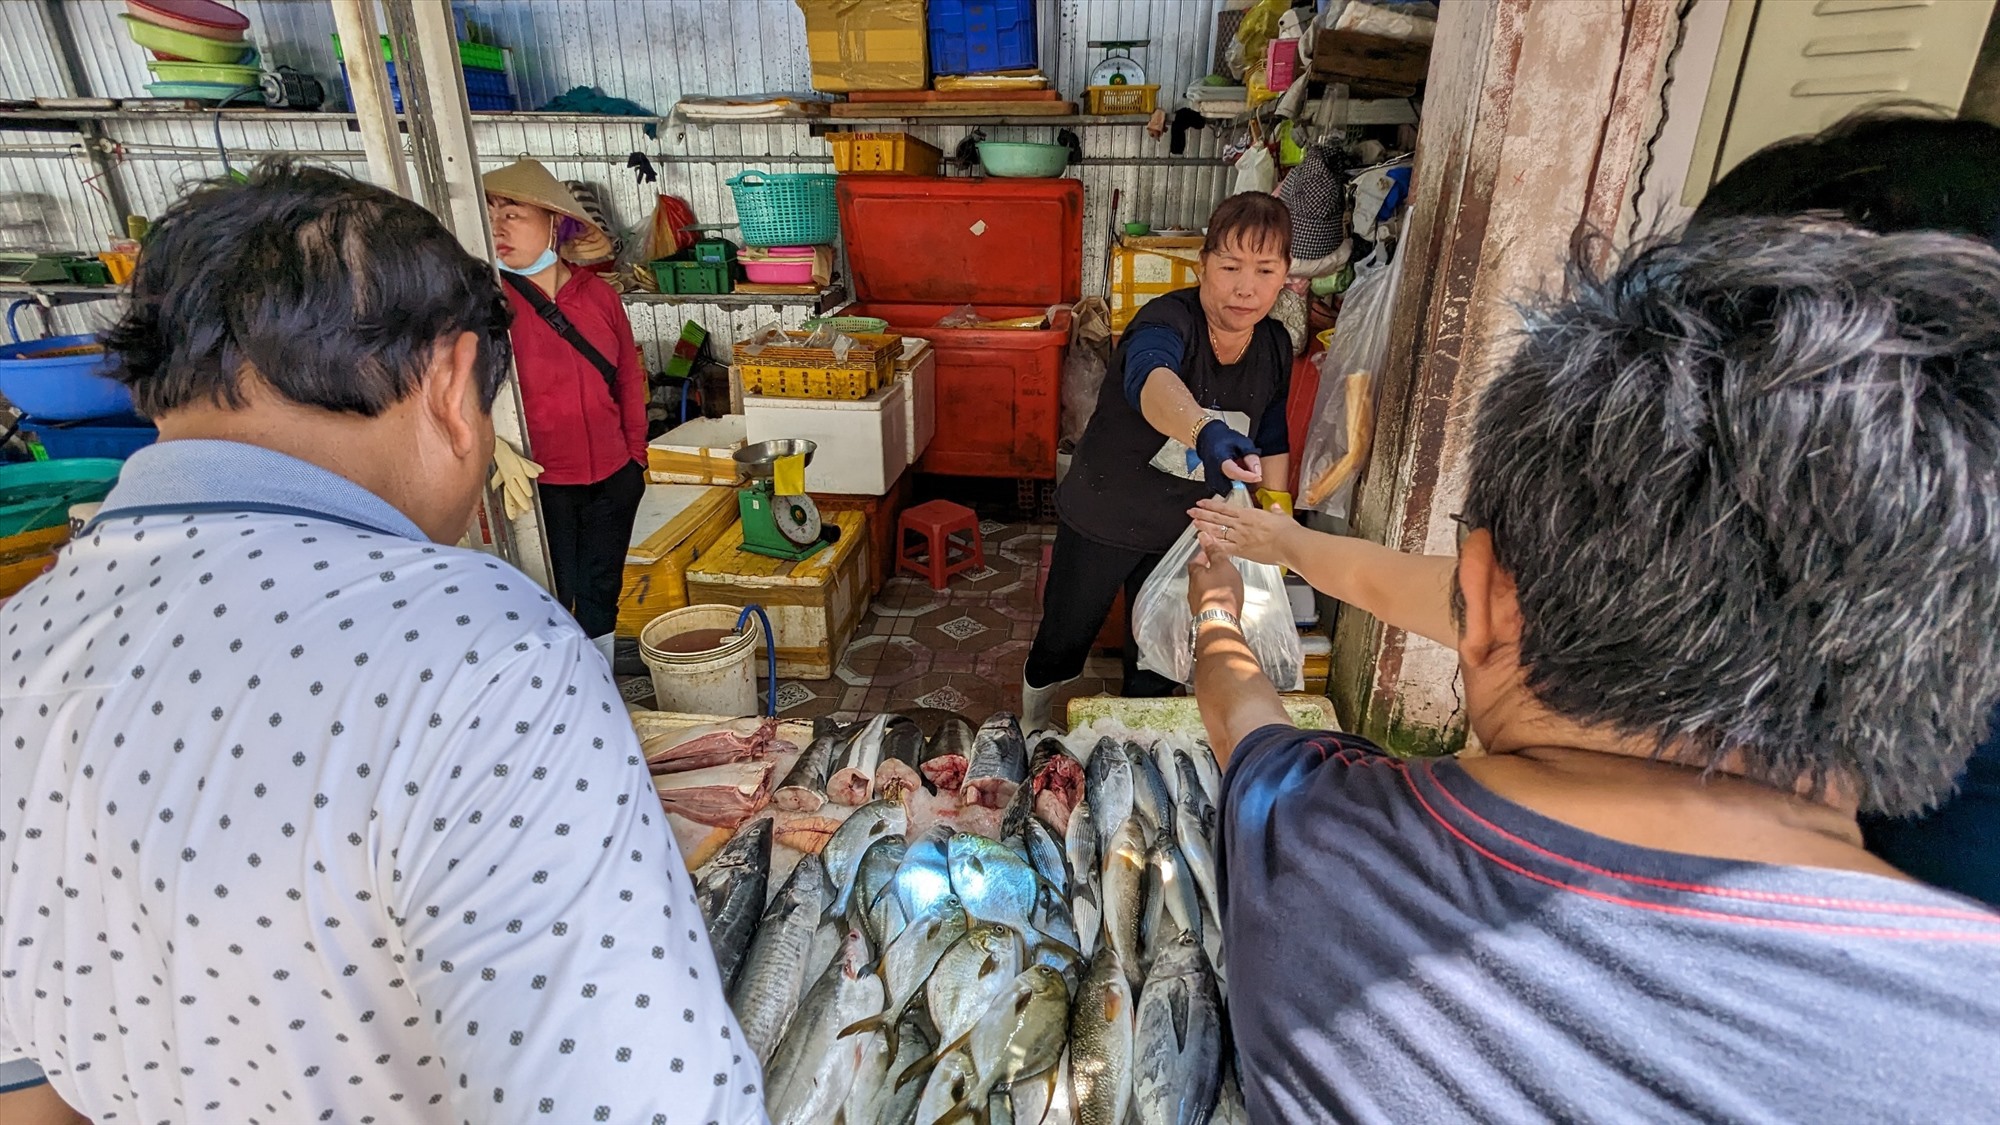 Từ TPHCM đến chợ Xóm Lưới mua hải sản, anh Nguyễn Văn Tùng cho biết, đây luôn là địa điểm anh lựa chọn mua hải sản mỗi dịp lễ khi đến Vũng Tàu, bởi nơi đây hải sản tươi mà giá phải chăng.